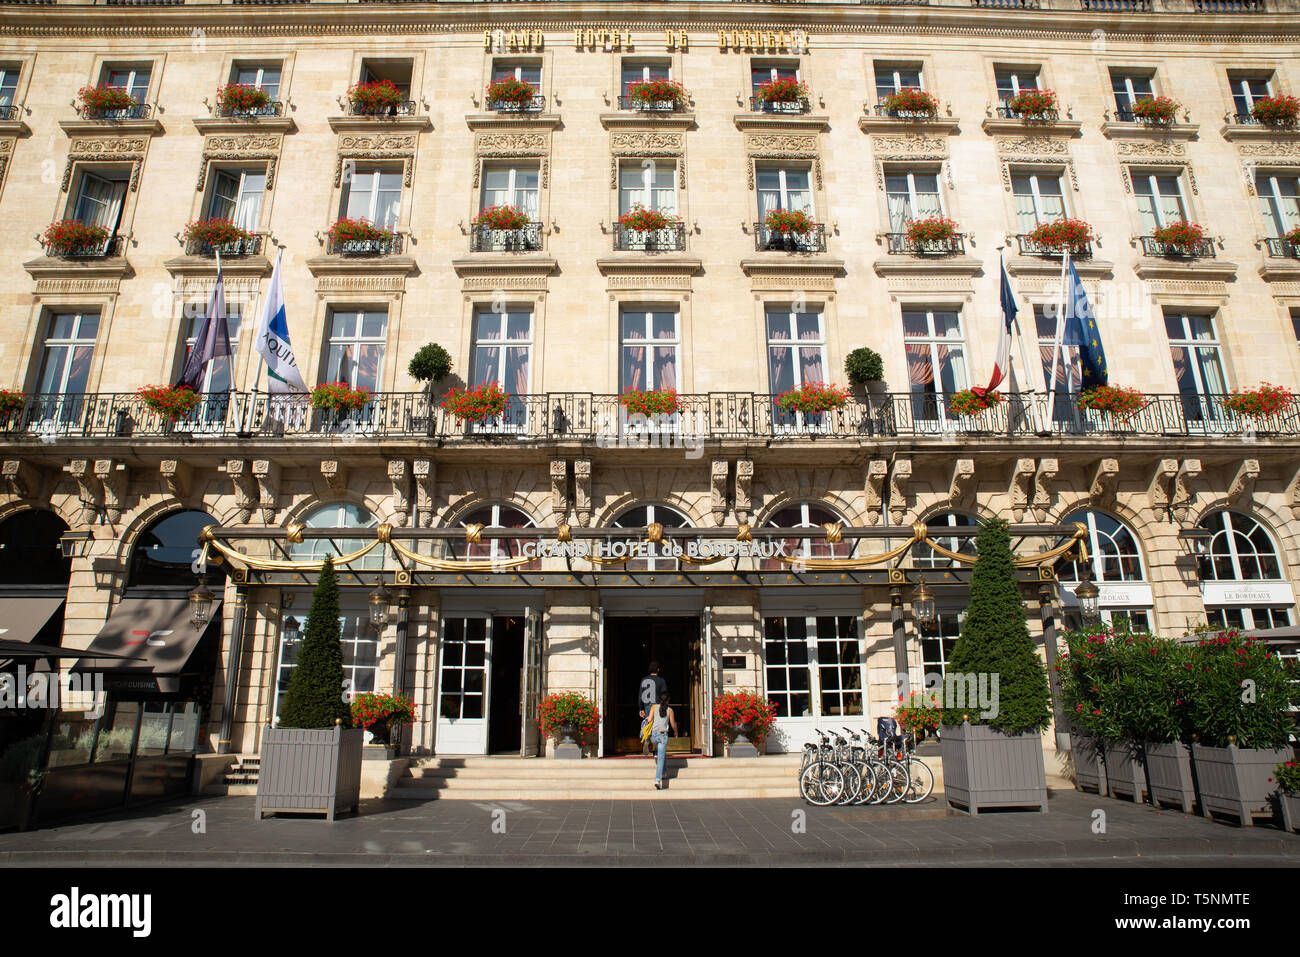 Grand Hotel de Bordeaux, Gironde, France. Banque D'Images